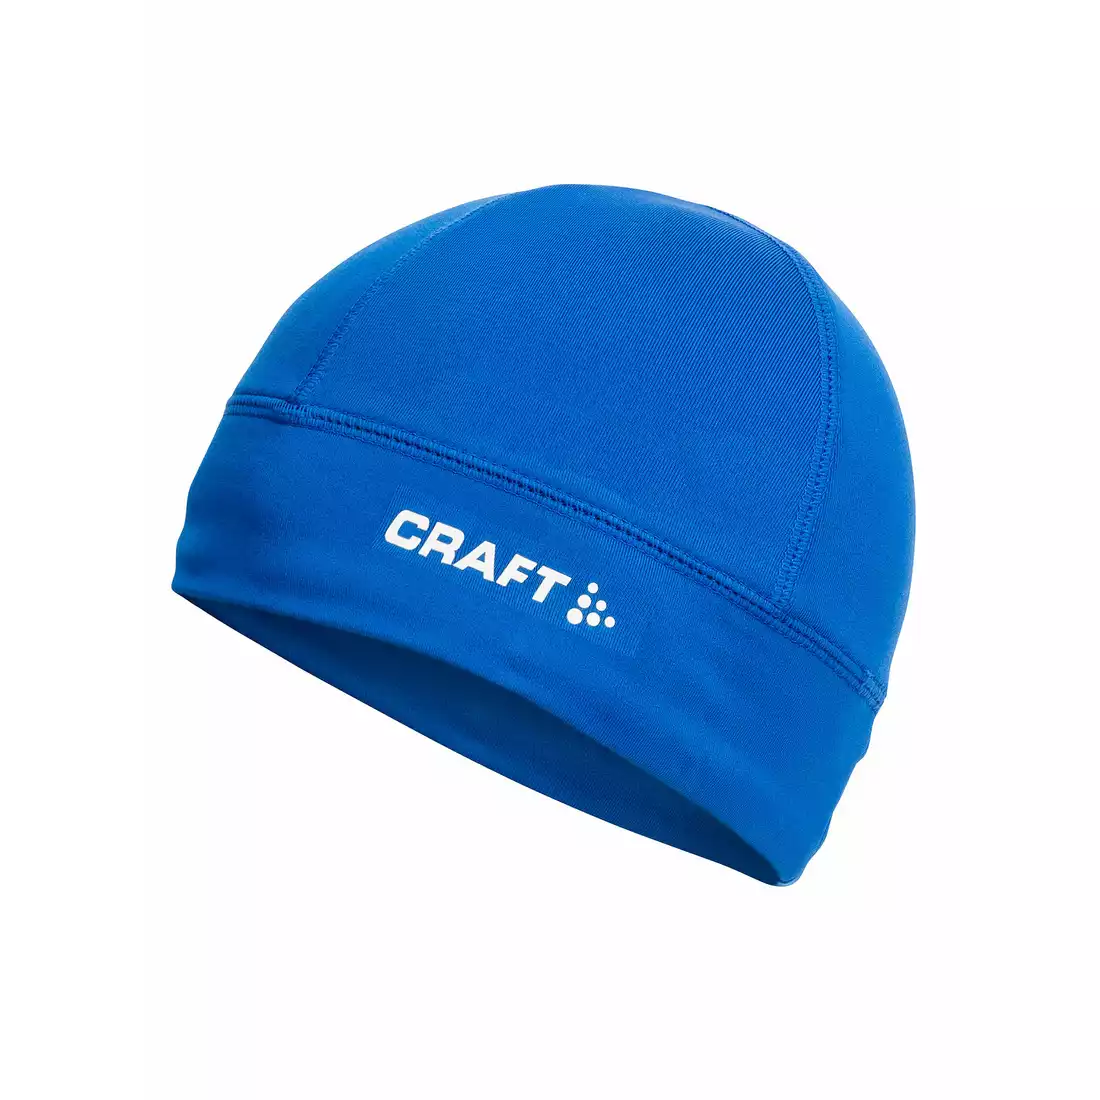 CRAFT XC czapka termoaktywna 1902362-1336